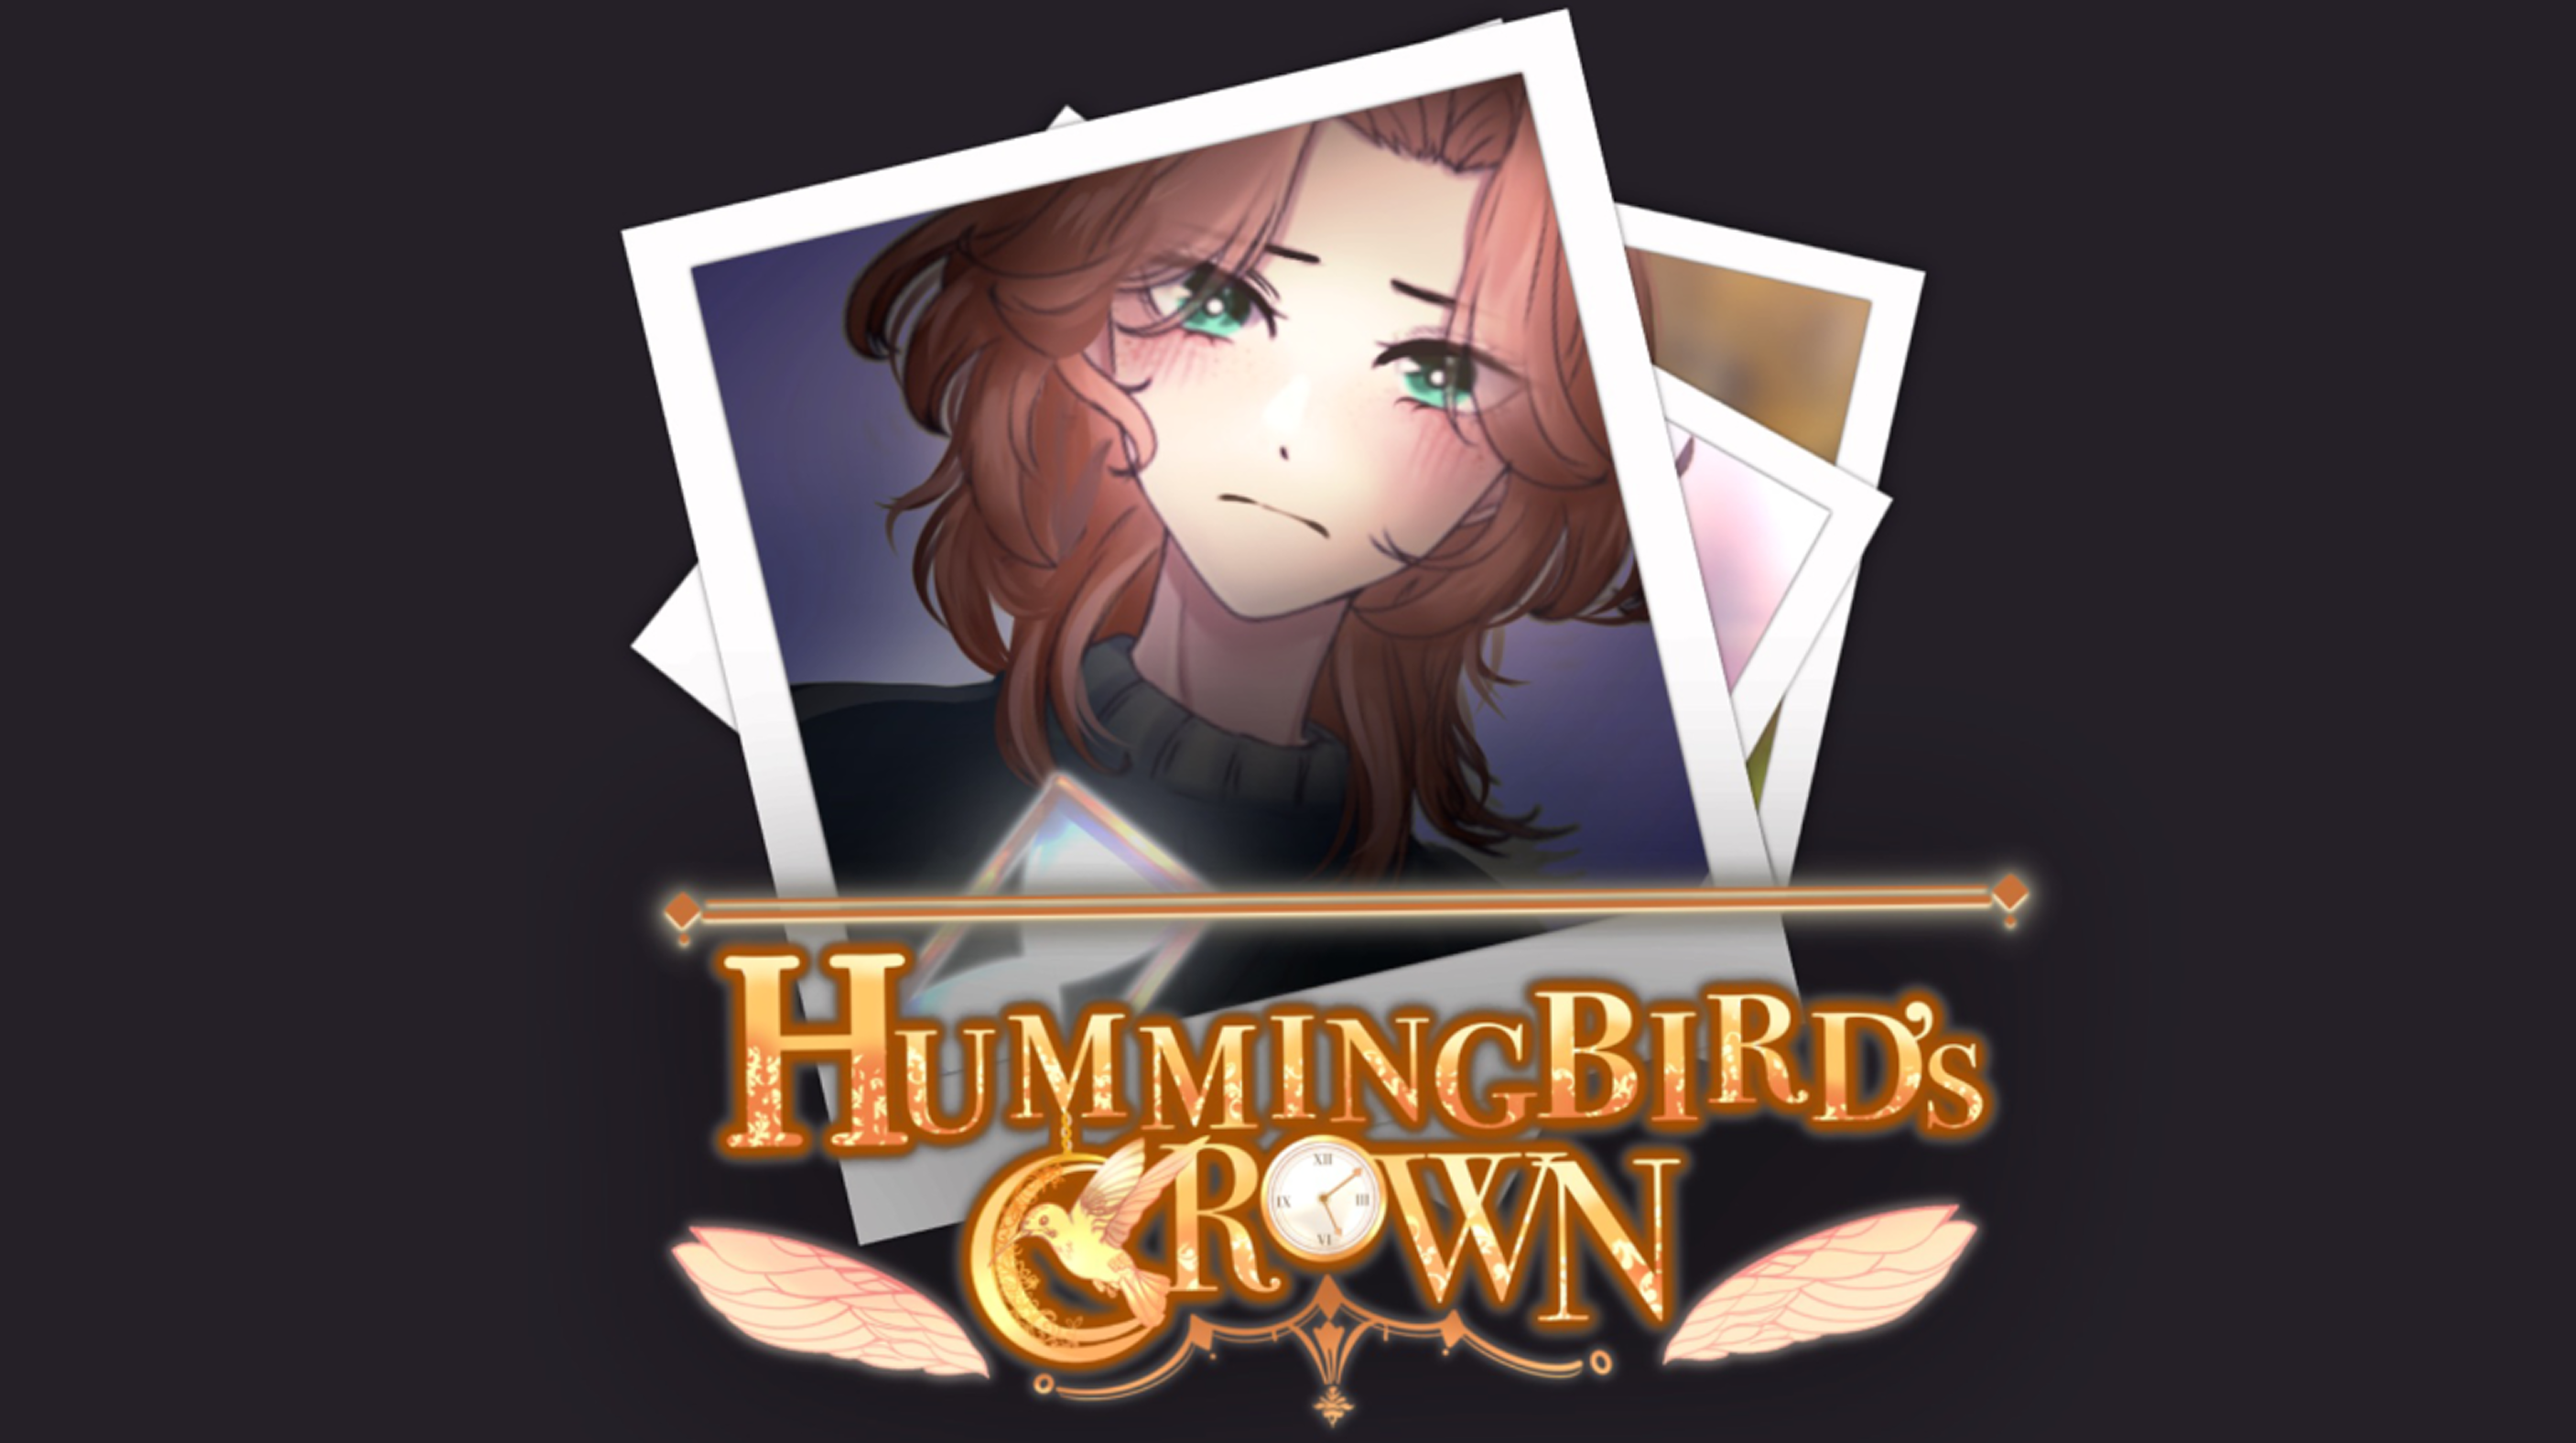 Hummingbird porn game